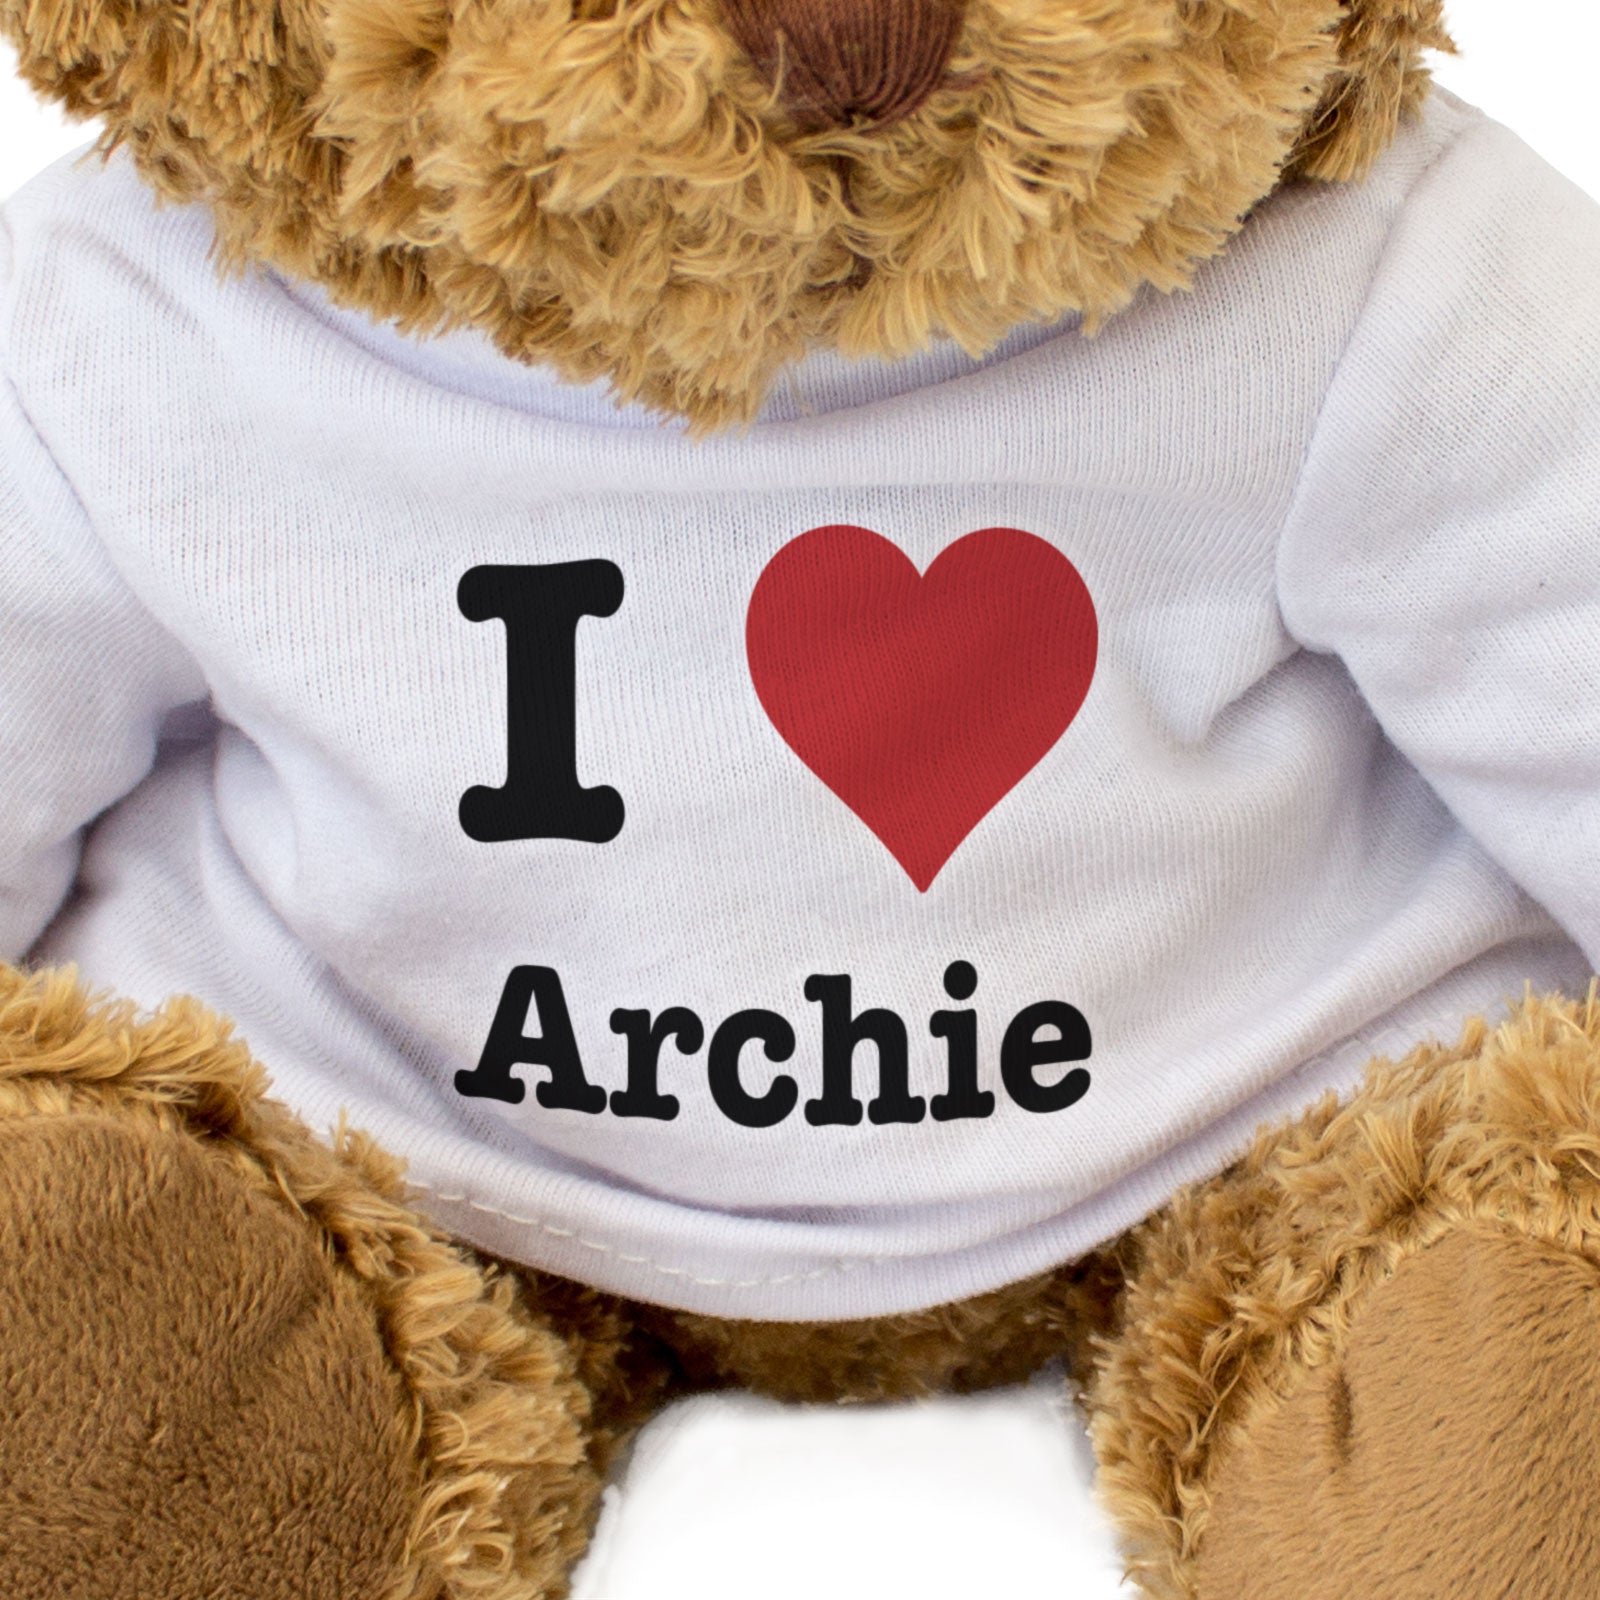 I Love Archie - Teddy Bear